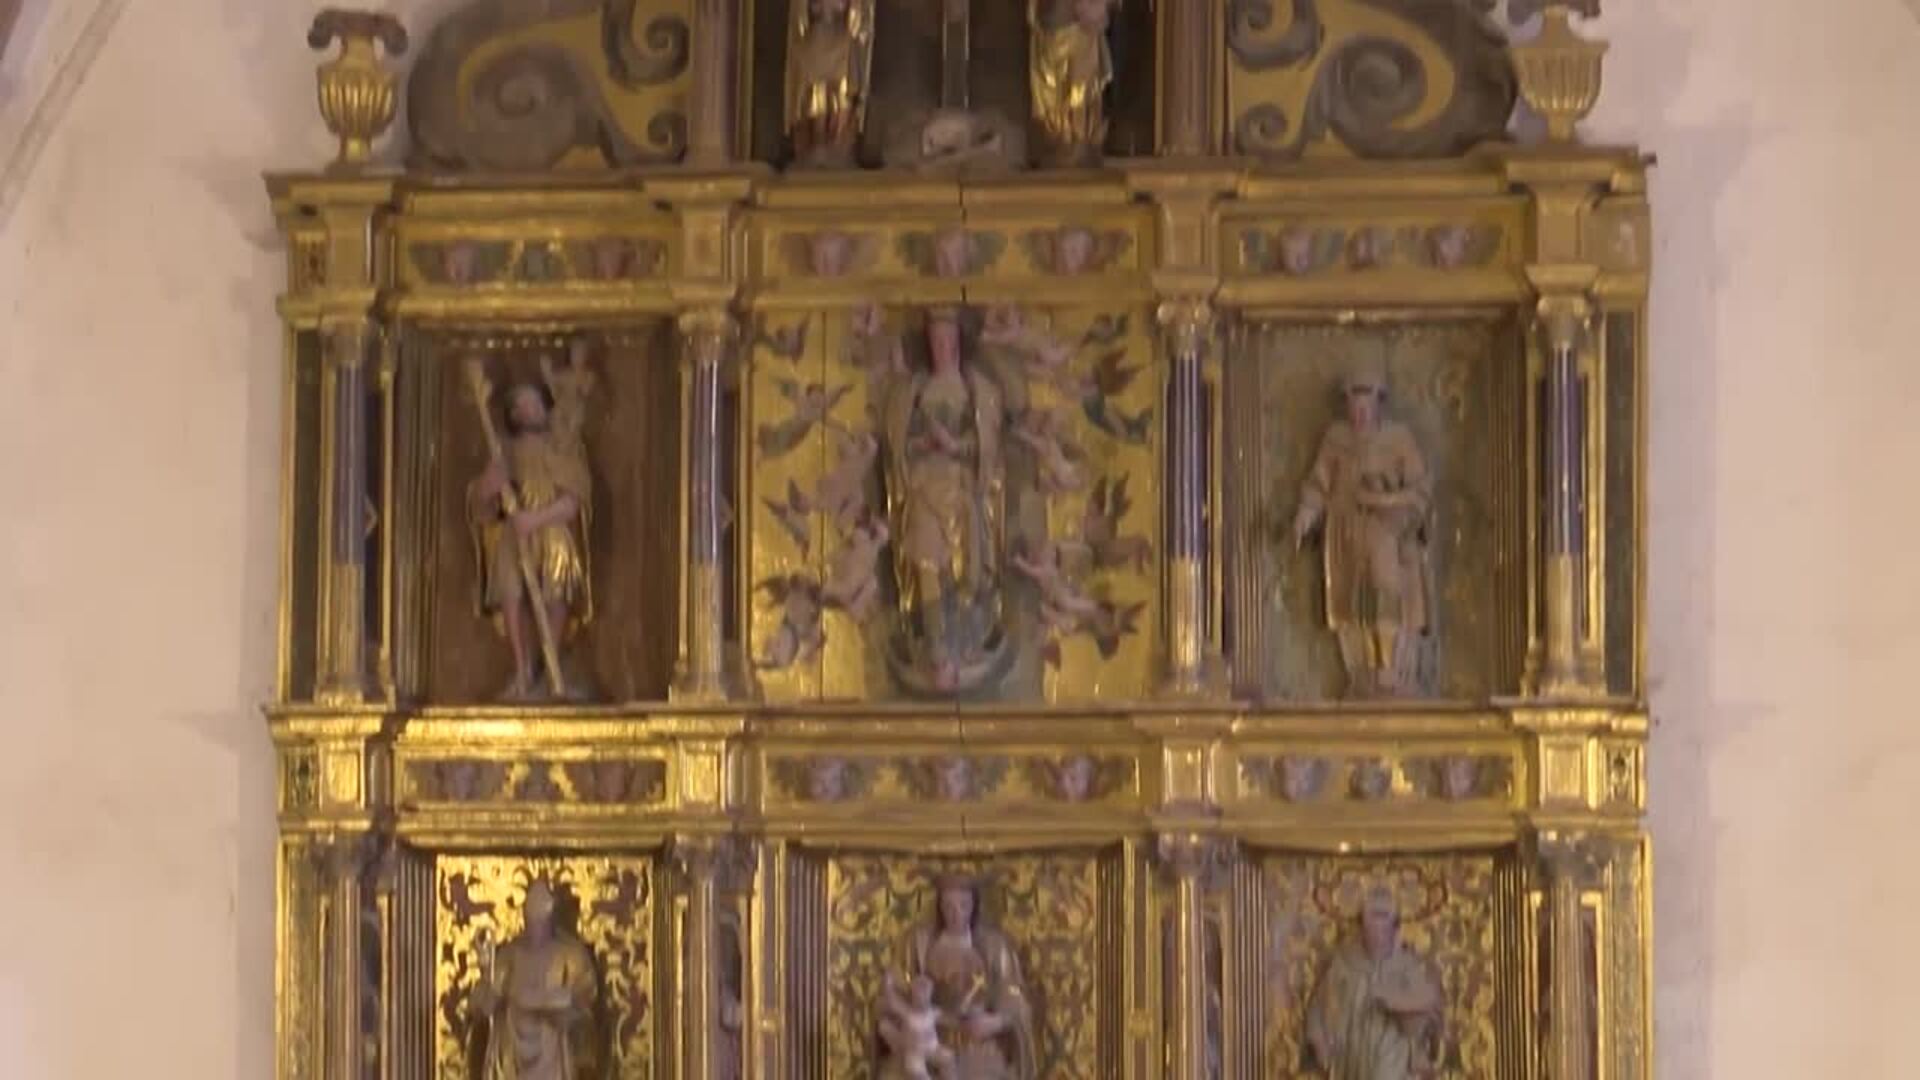 Escalada busca restaurar un retablo donde sus ancestros "lloraron, rieron y se casaron"